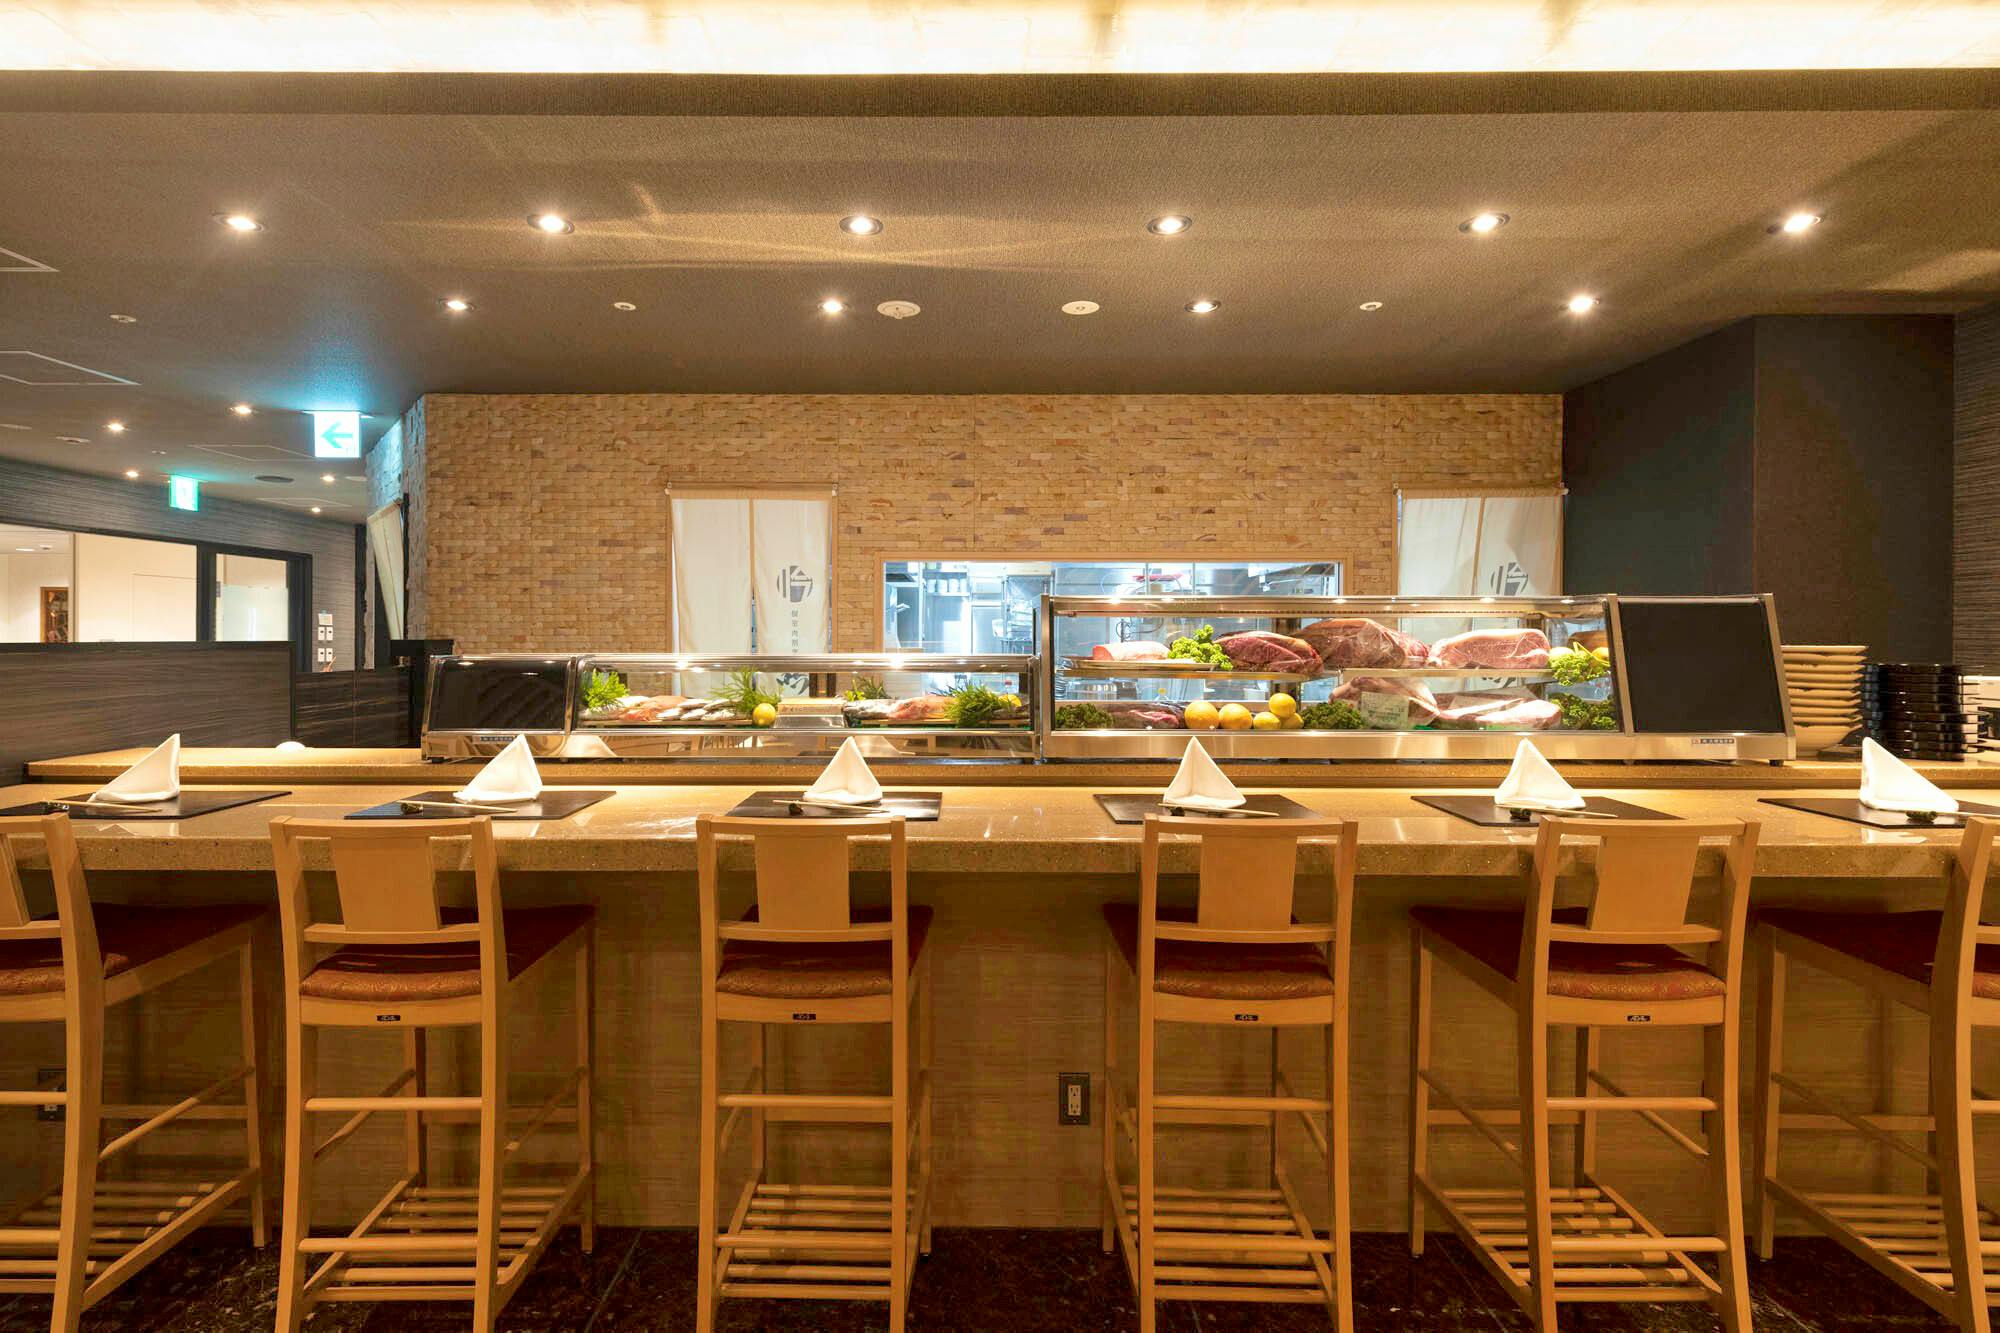 天王洲アイルグルメ レストラン45選 絶対行きたいおすすめレストラン Okaimonoモール レストラン